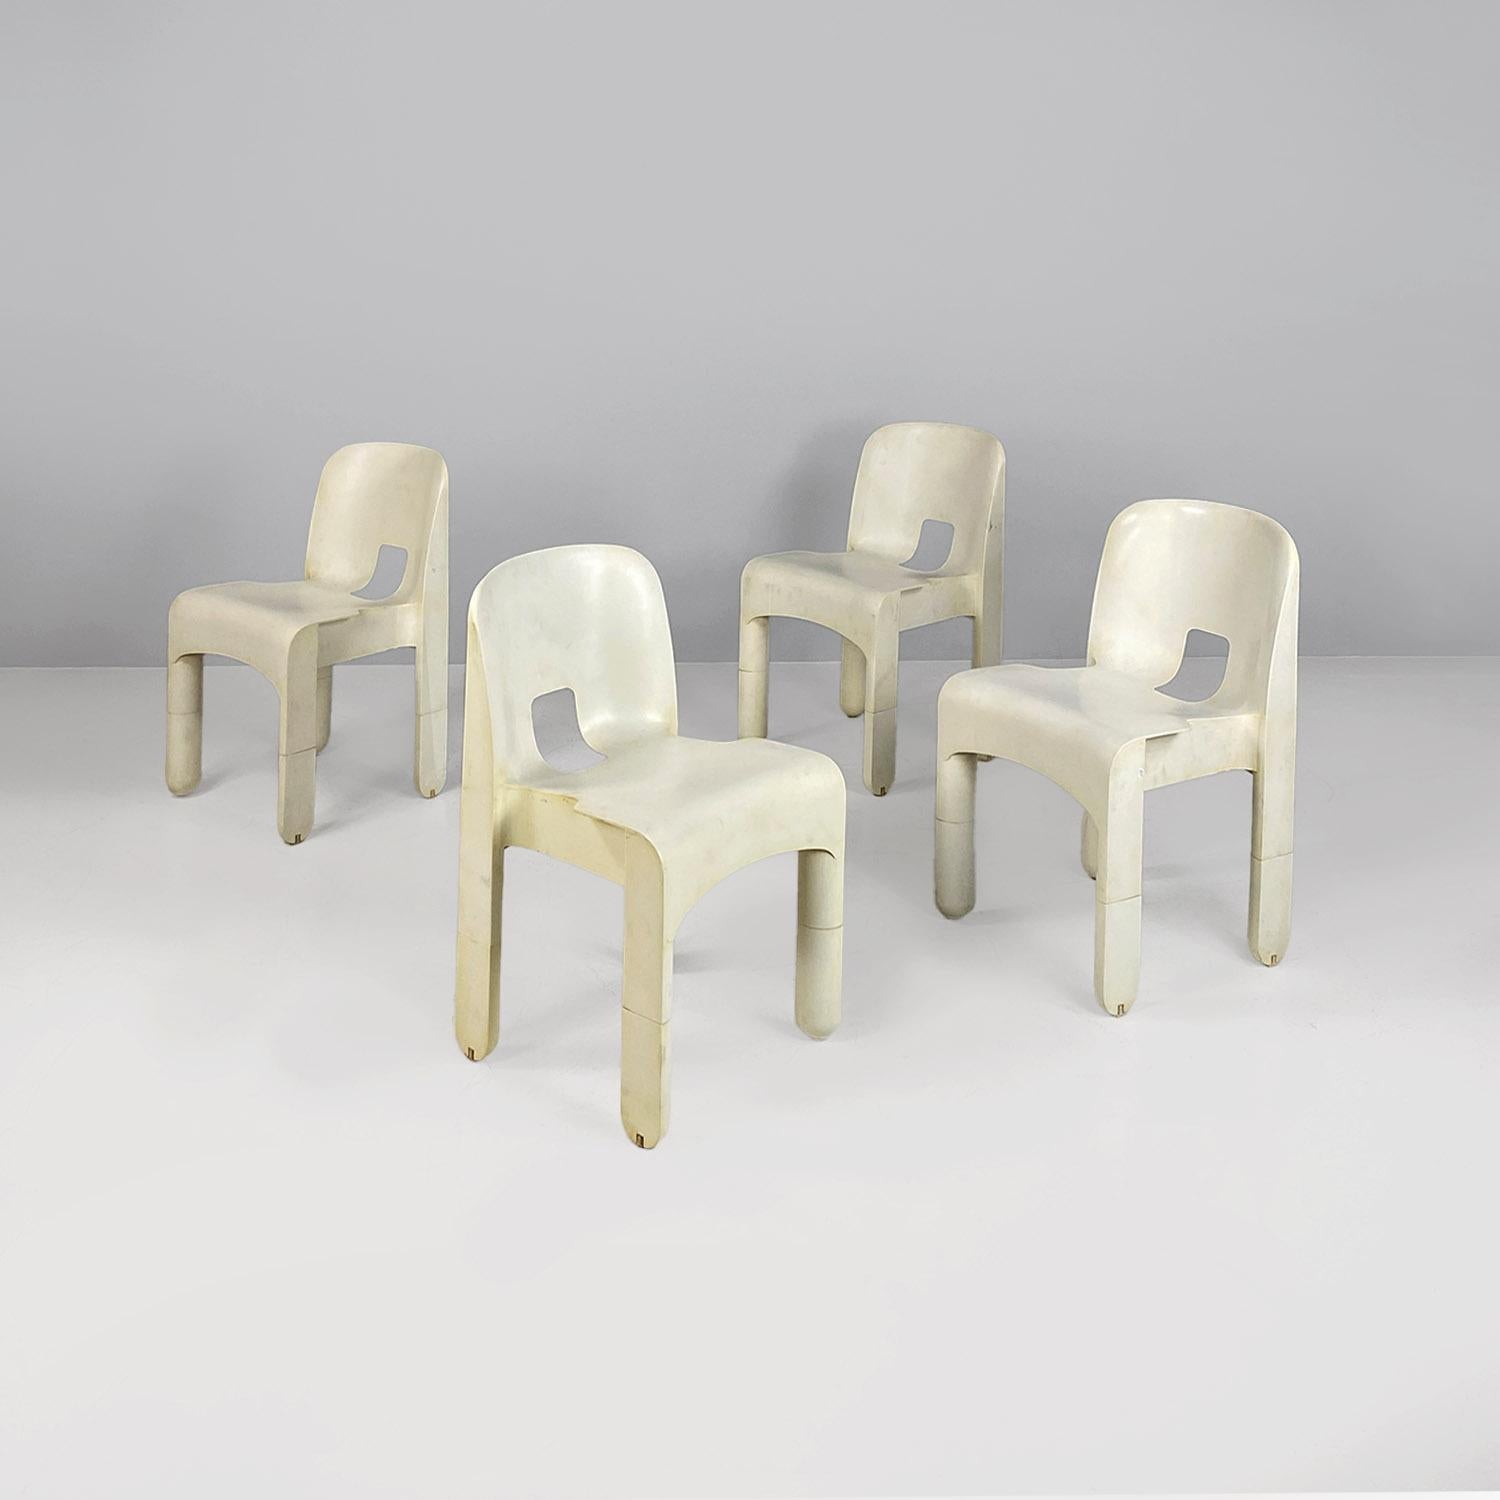 Italienische moderne Stühle aus weißem Kunststoff 860 Universale, Joe Colombo, Kartell, 1970er Jahre.
Set bestehend aus vier Stühlen Modell 860, auch bekannt als Universale Chair, aus cremeweißem ABS-Kunststoff. Die rechteckige Sitzfläche des Stuhls